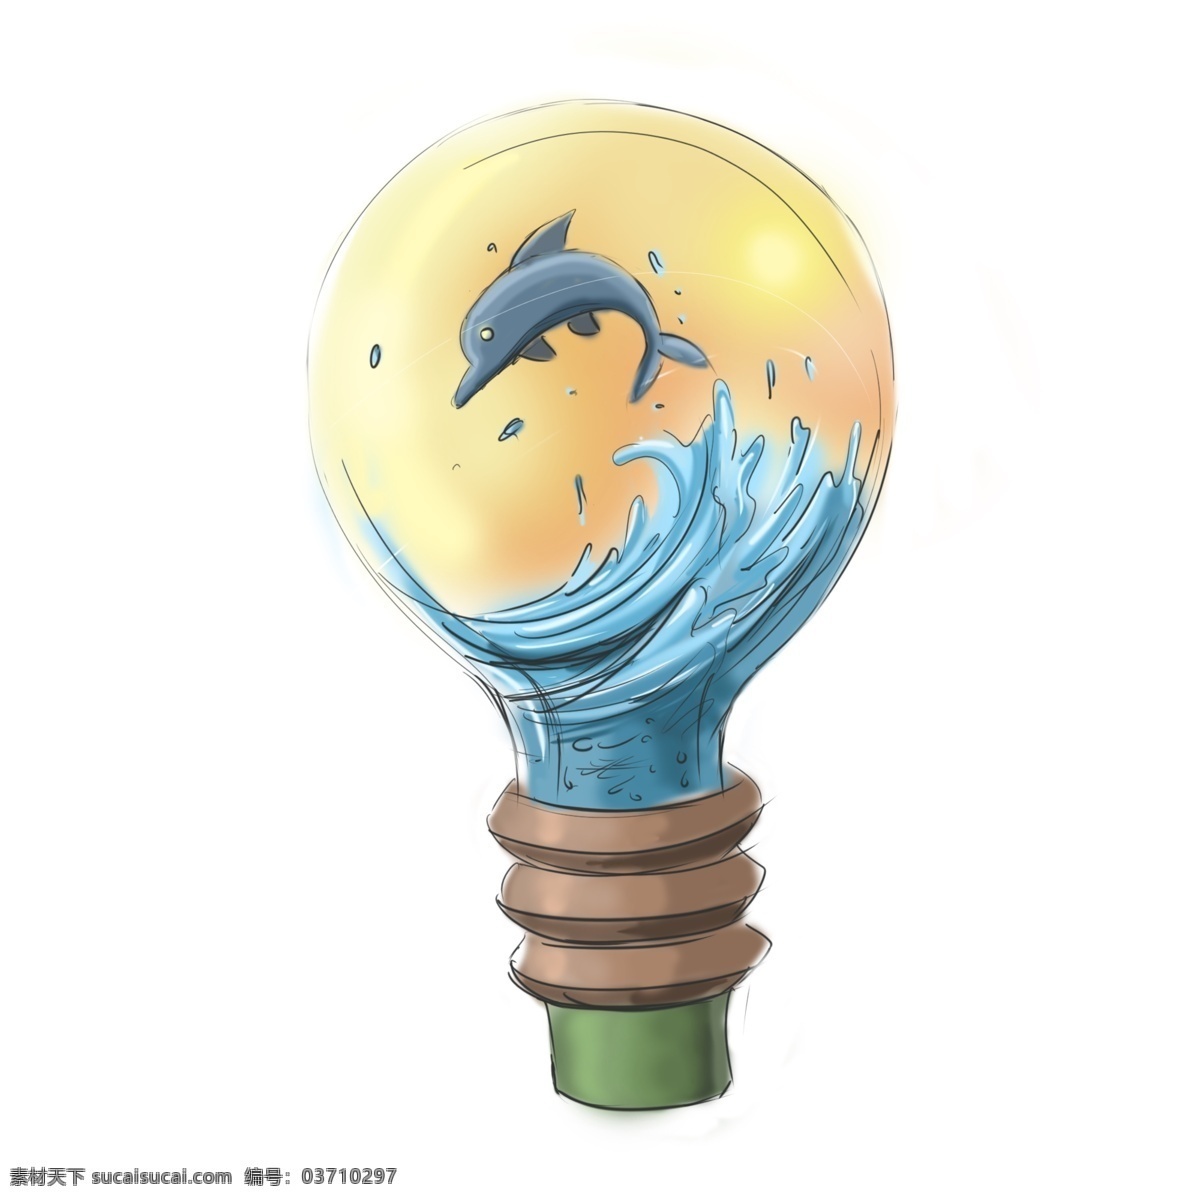 灯泡 创意 灯具 卡通 插画 手绘 创意灯饰 波涛汹涌 海浪飞溅 海豚 螺旋 光晕 温暖 暖色调 卡通风格 插画手绘